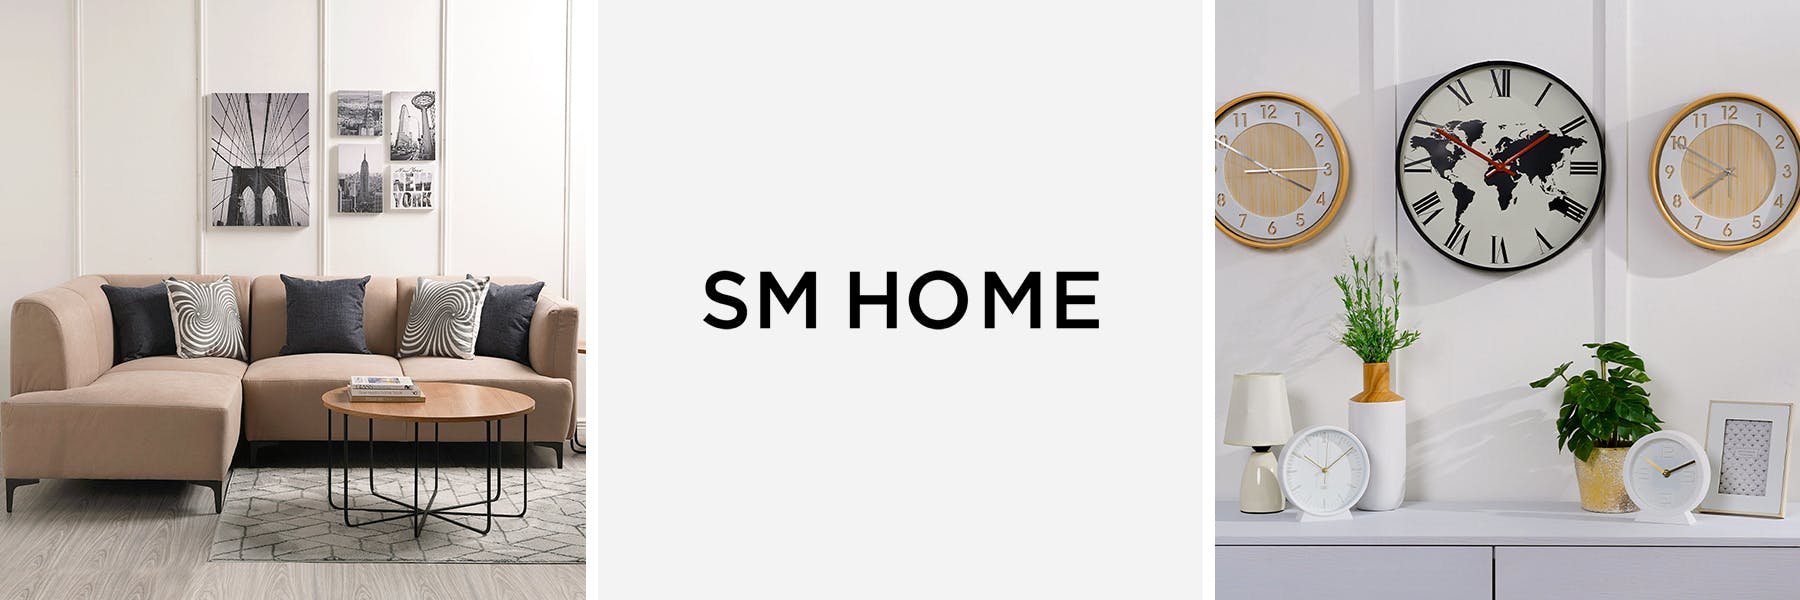 bannerlist-sm-home